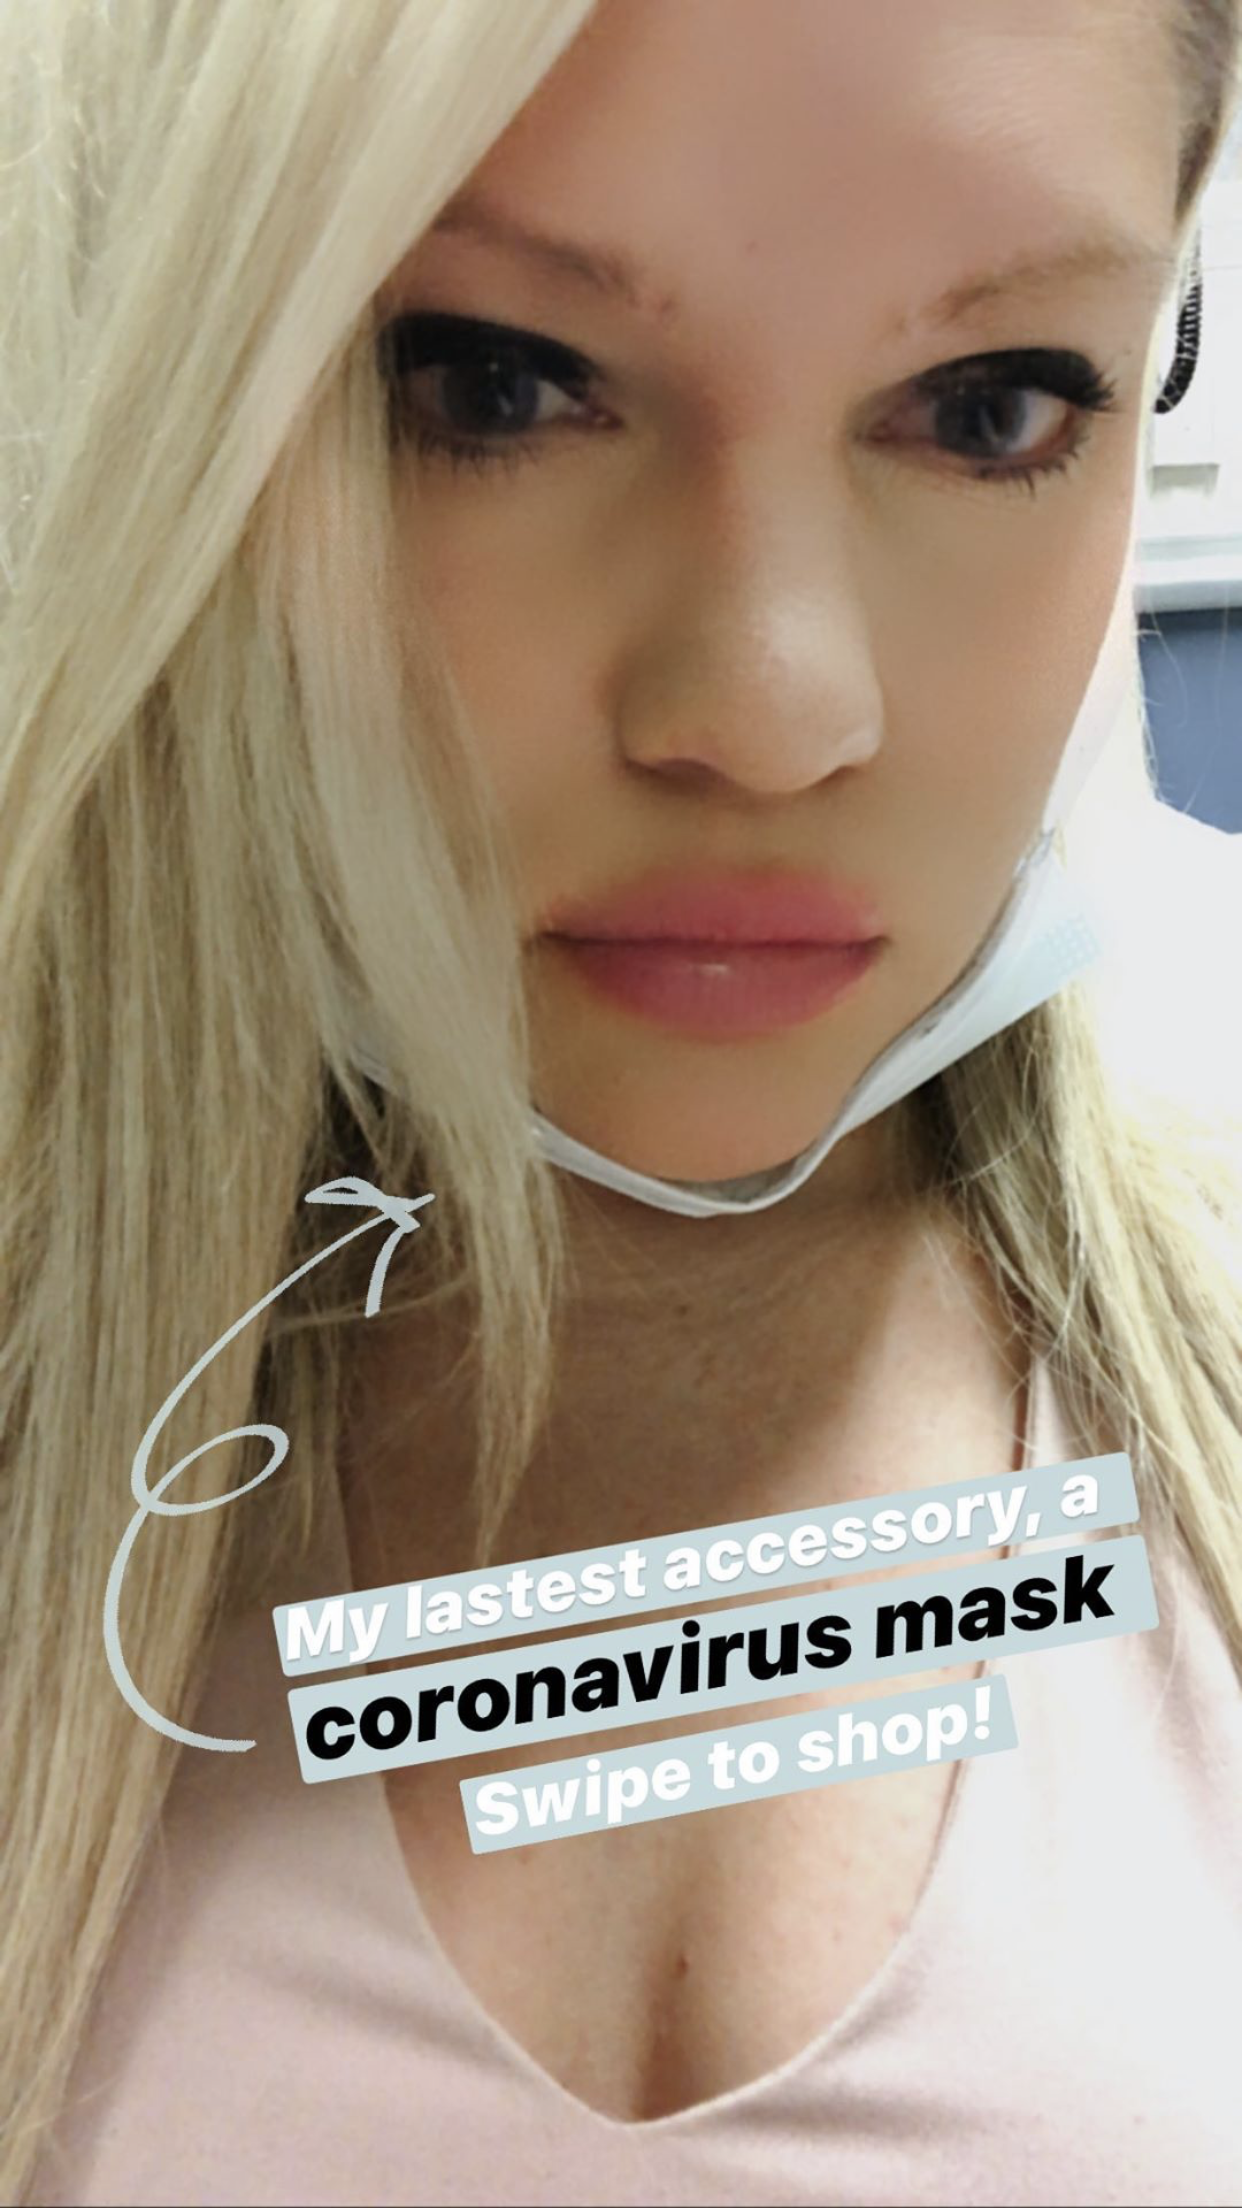 Coronavirus mask